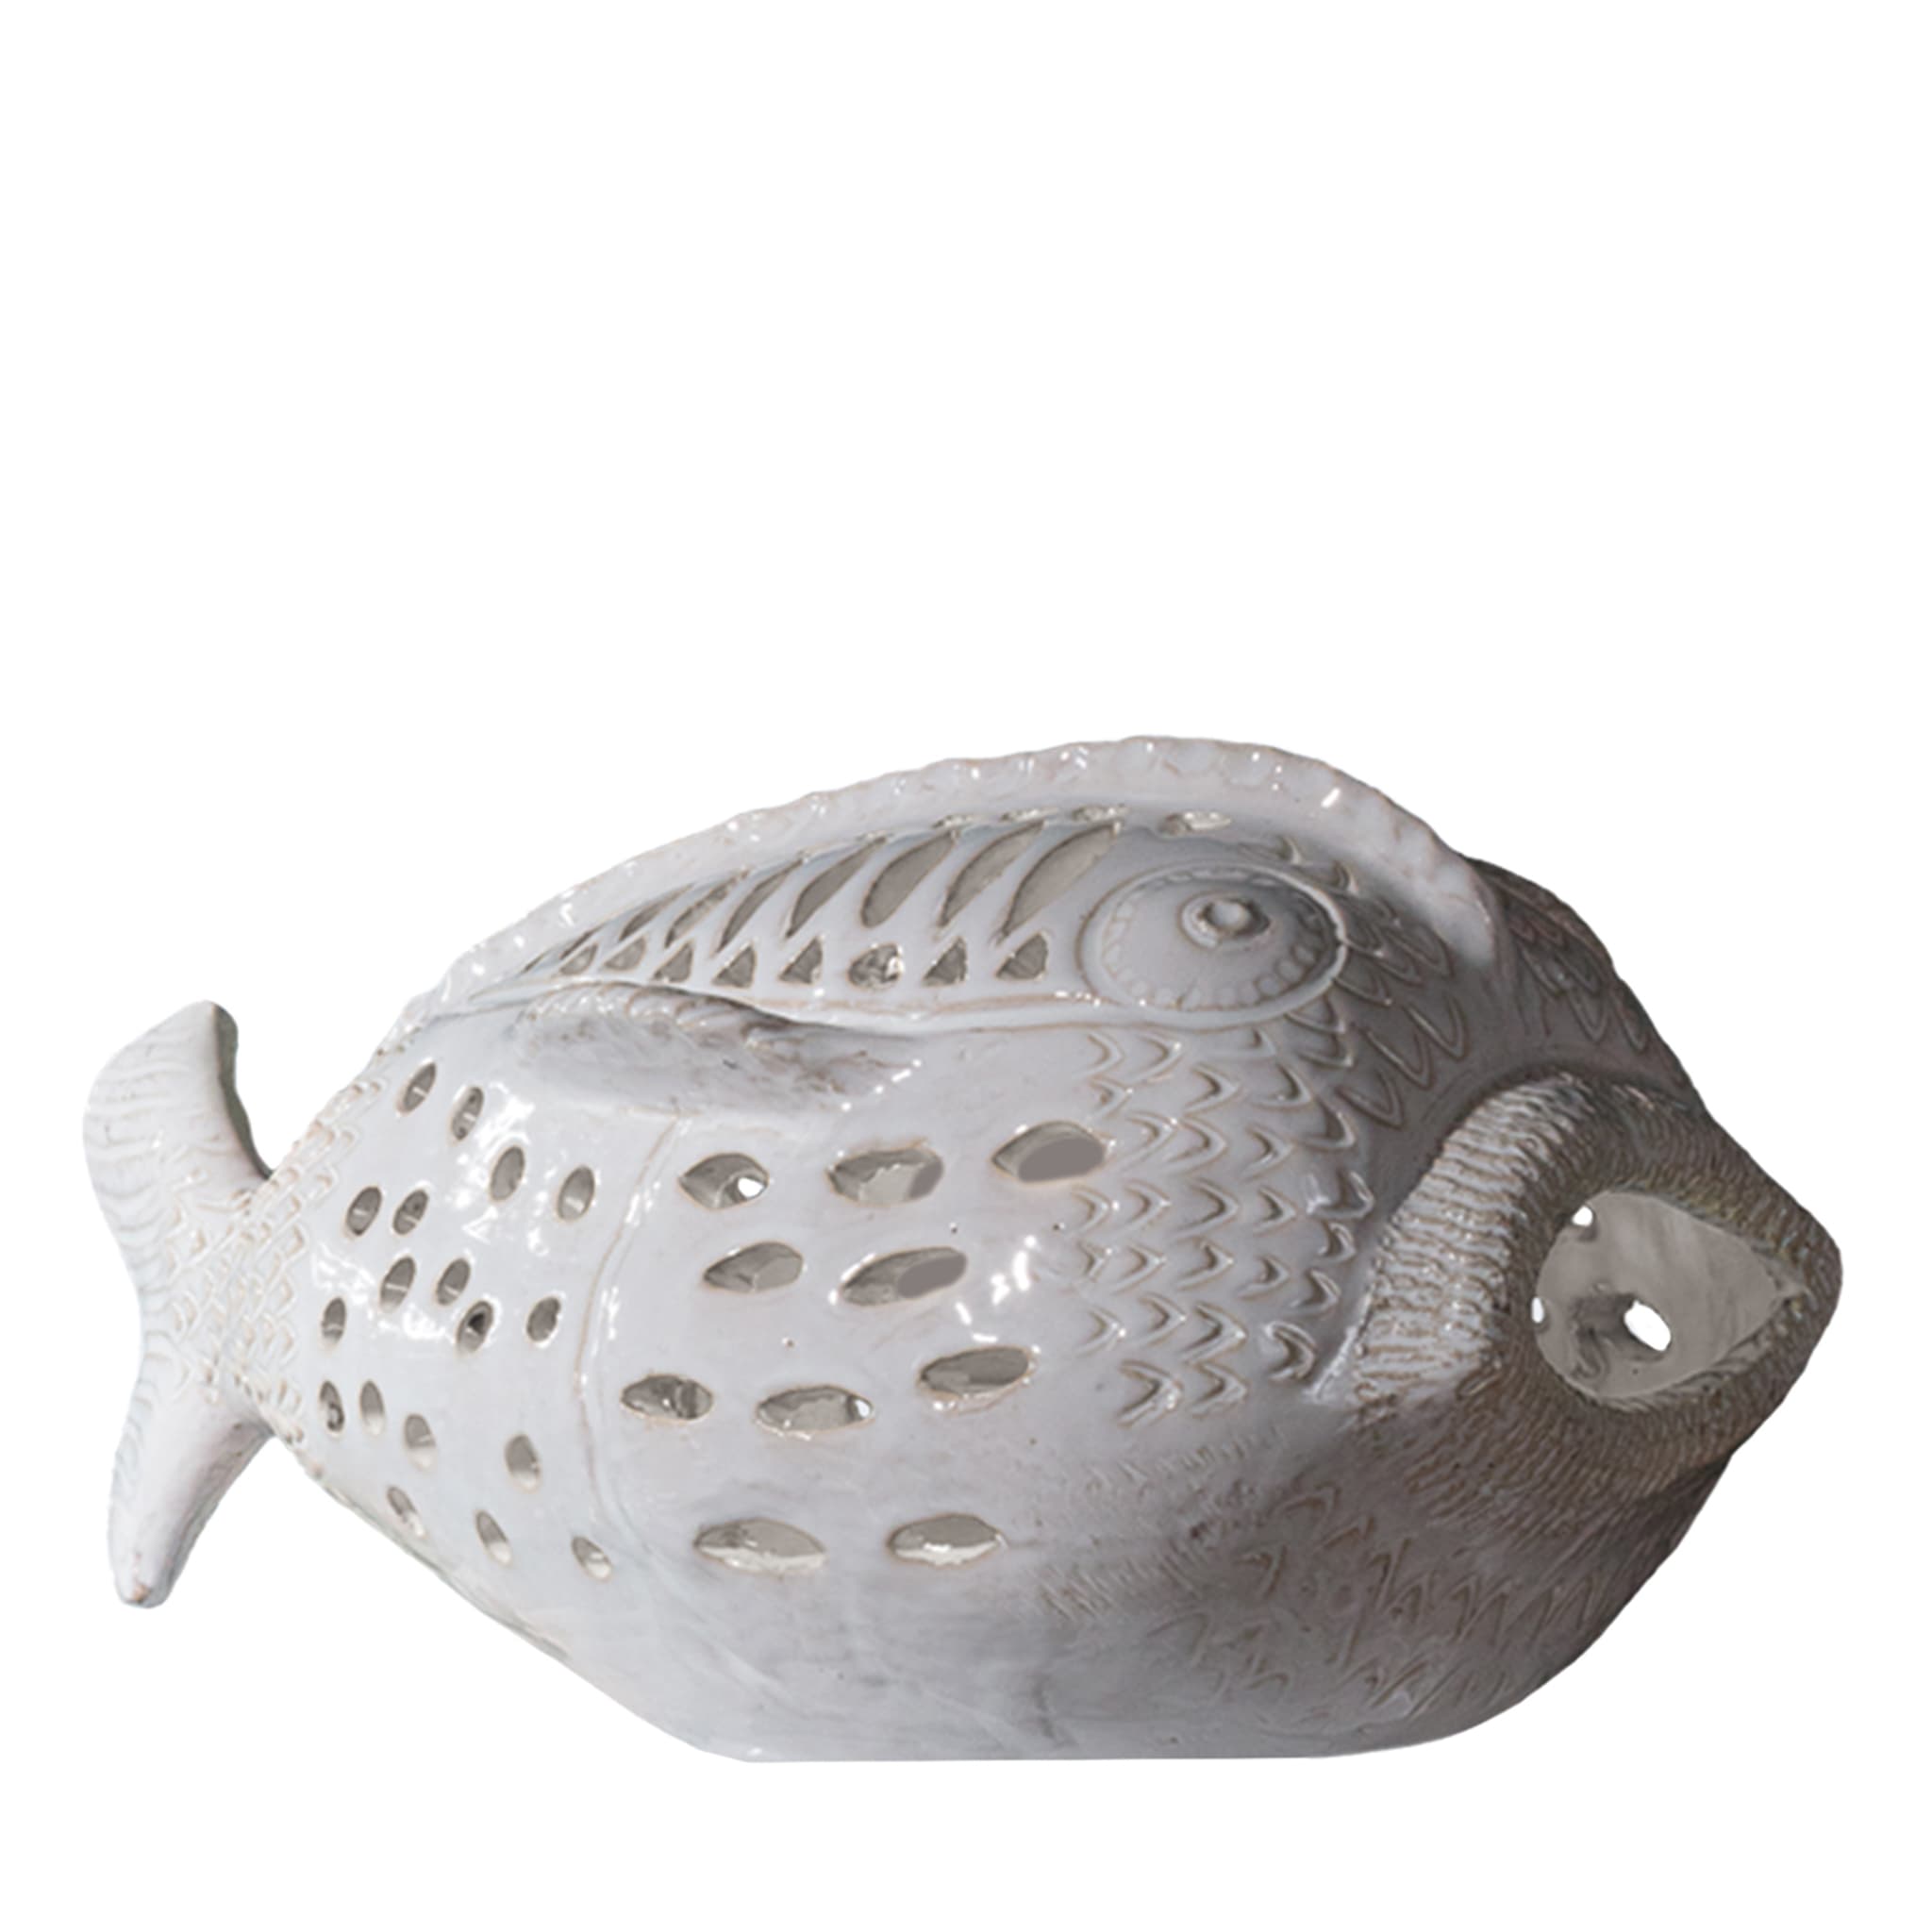 Perle Marine Pesce Pagliaccio N. 6 Weiße Skulptur  - Hauptansicht